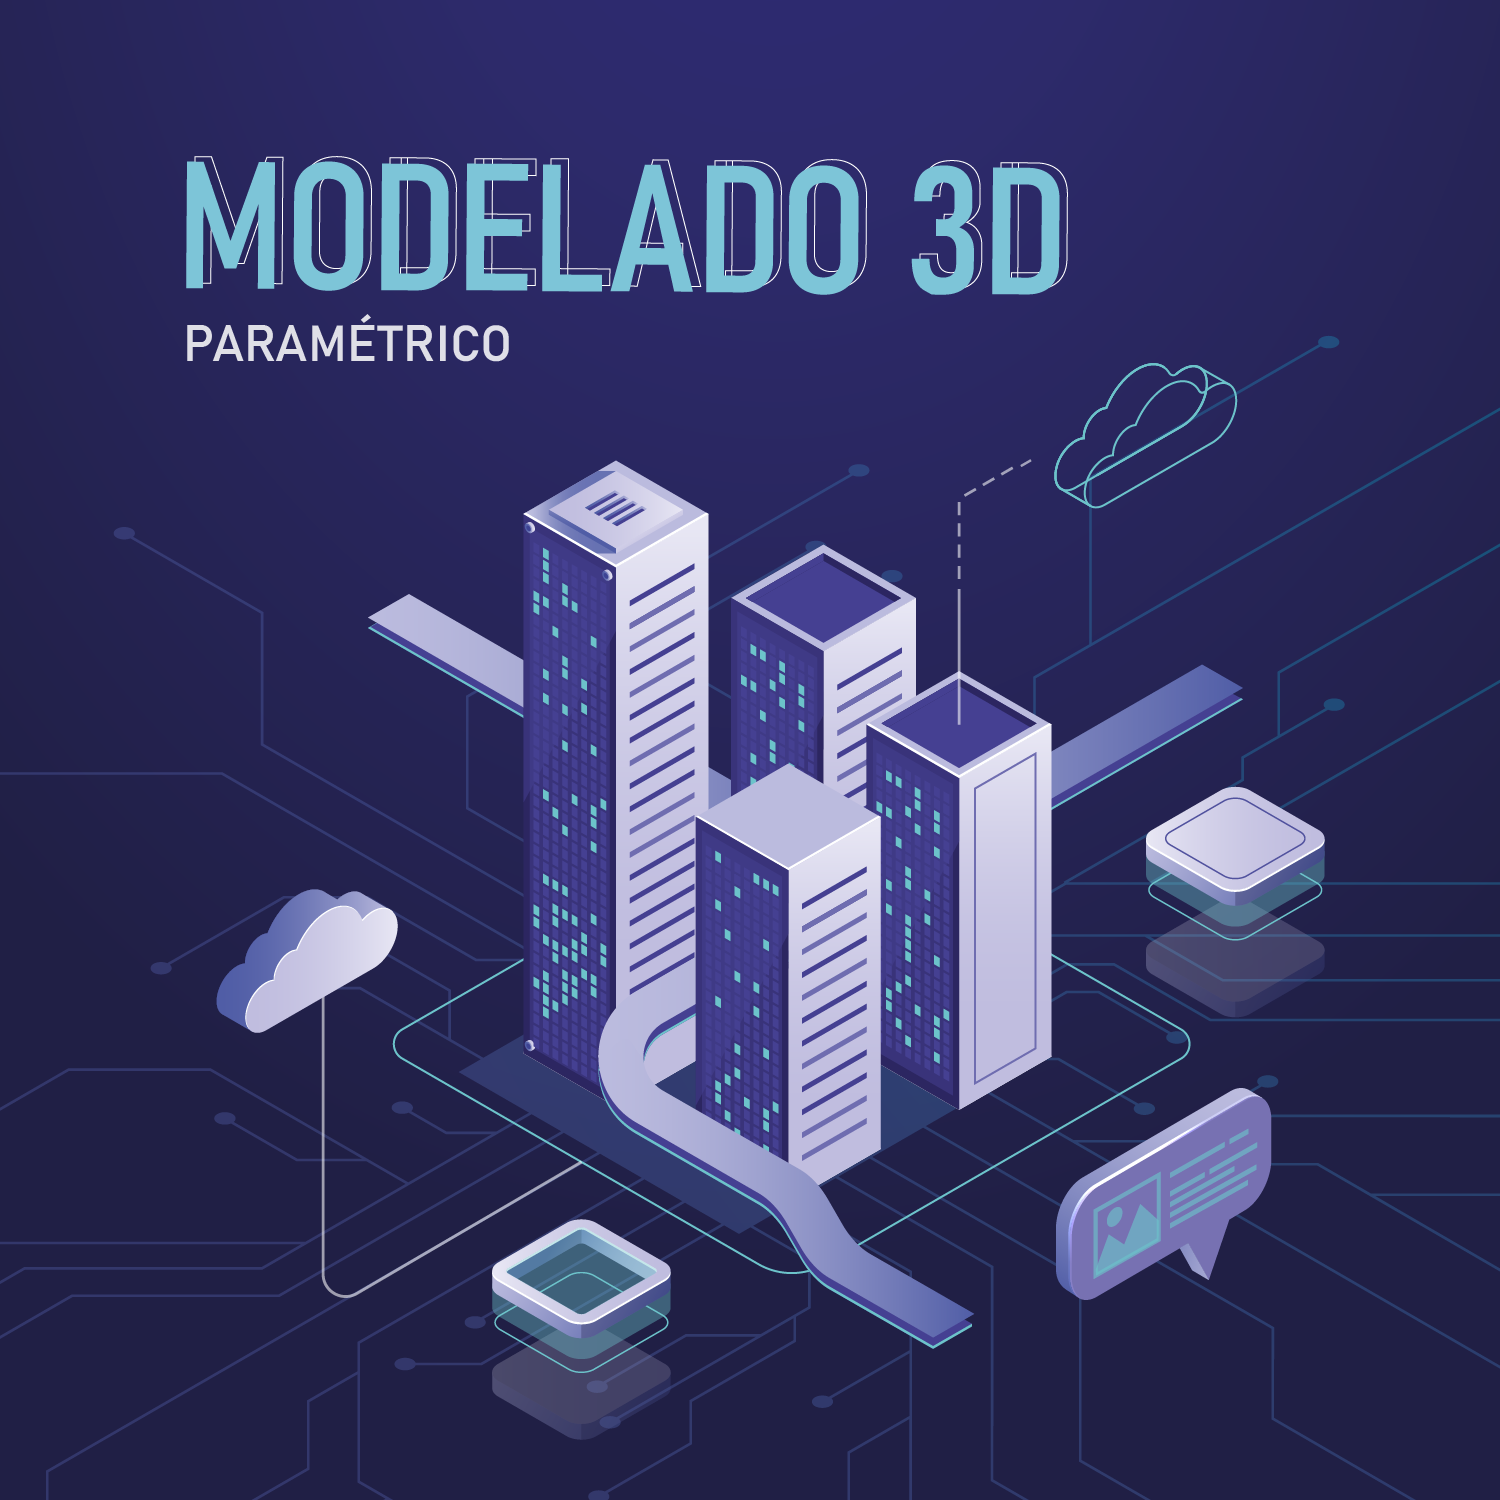 Modelado 3D paramétrico